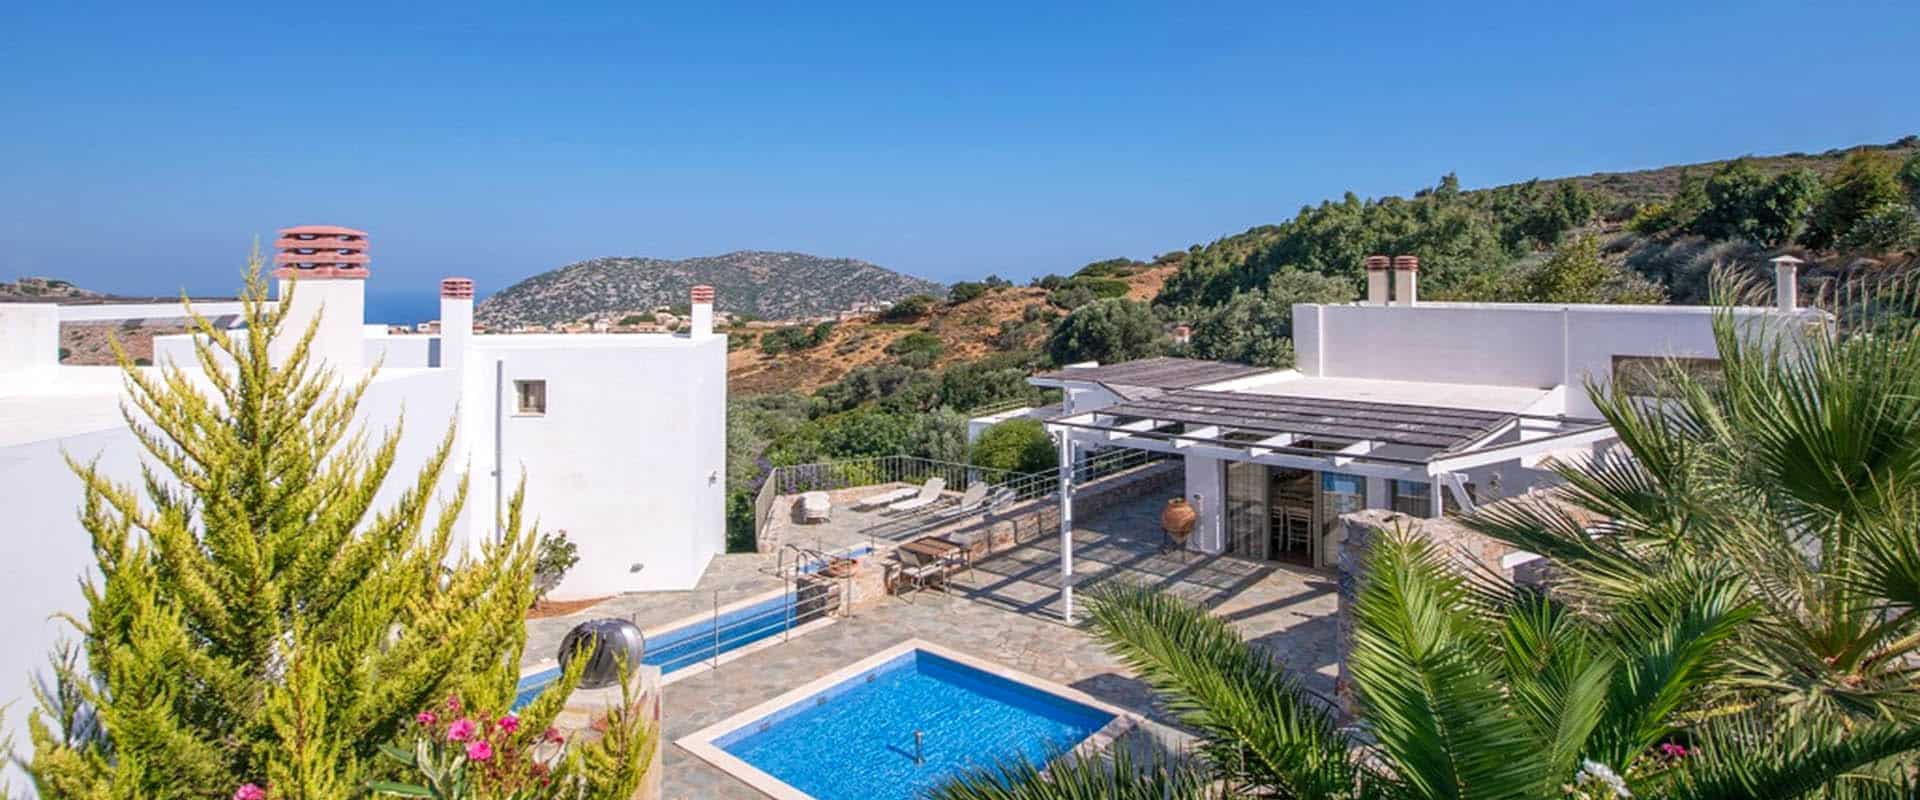 Ökotourismus Ferienhotel nachhaltiger Tourismus Kreta Griechenland